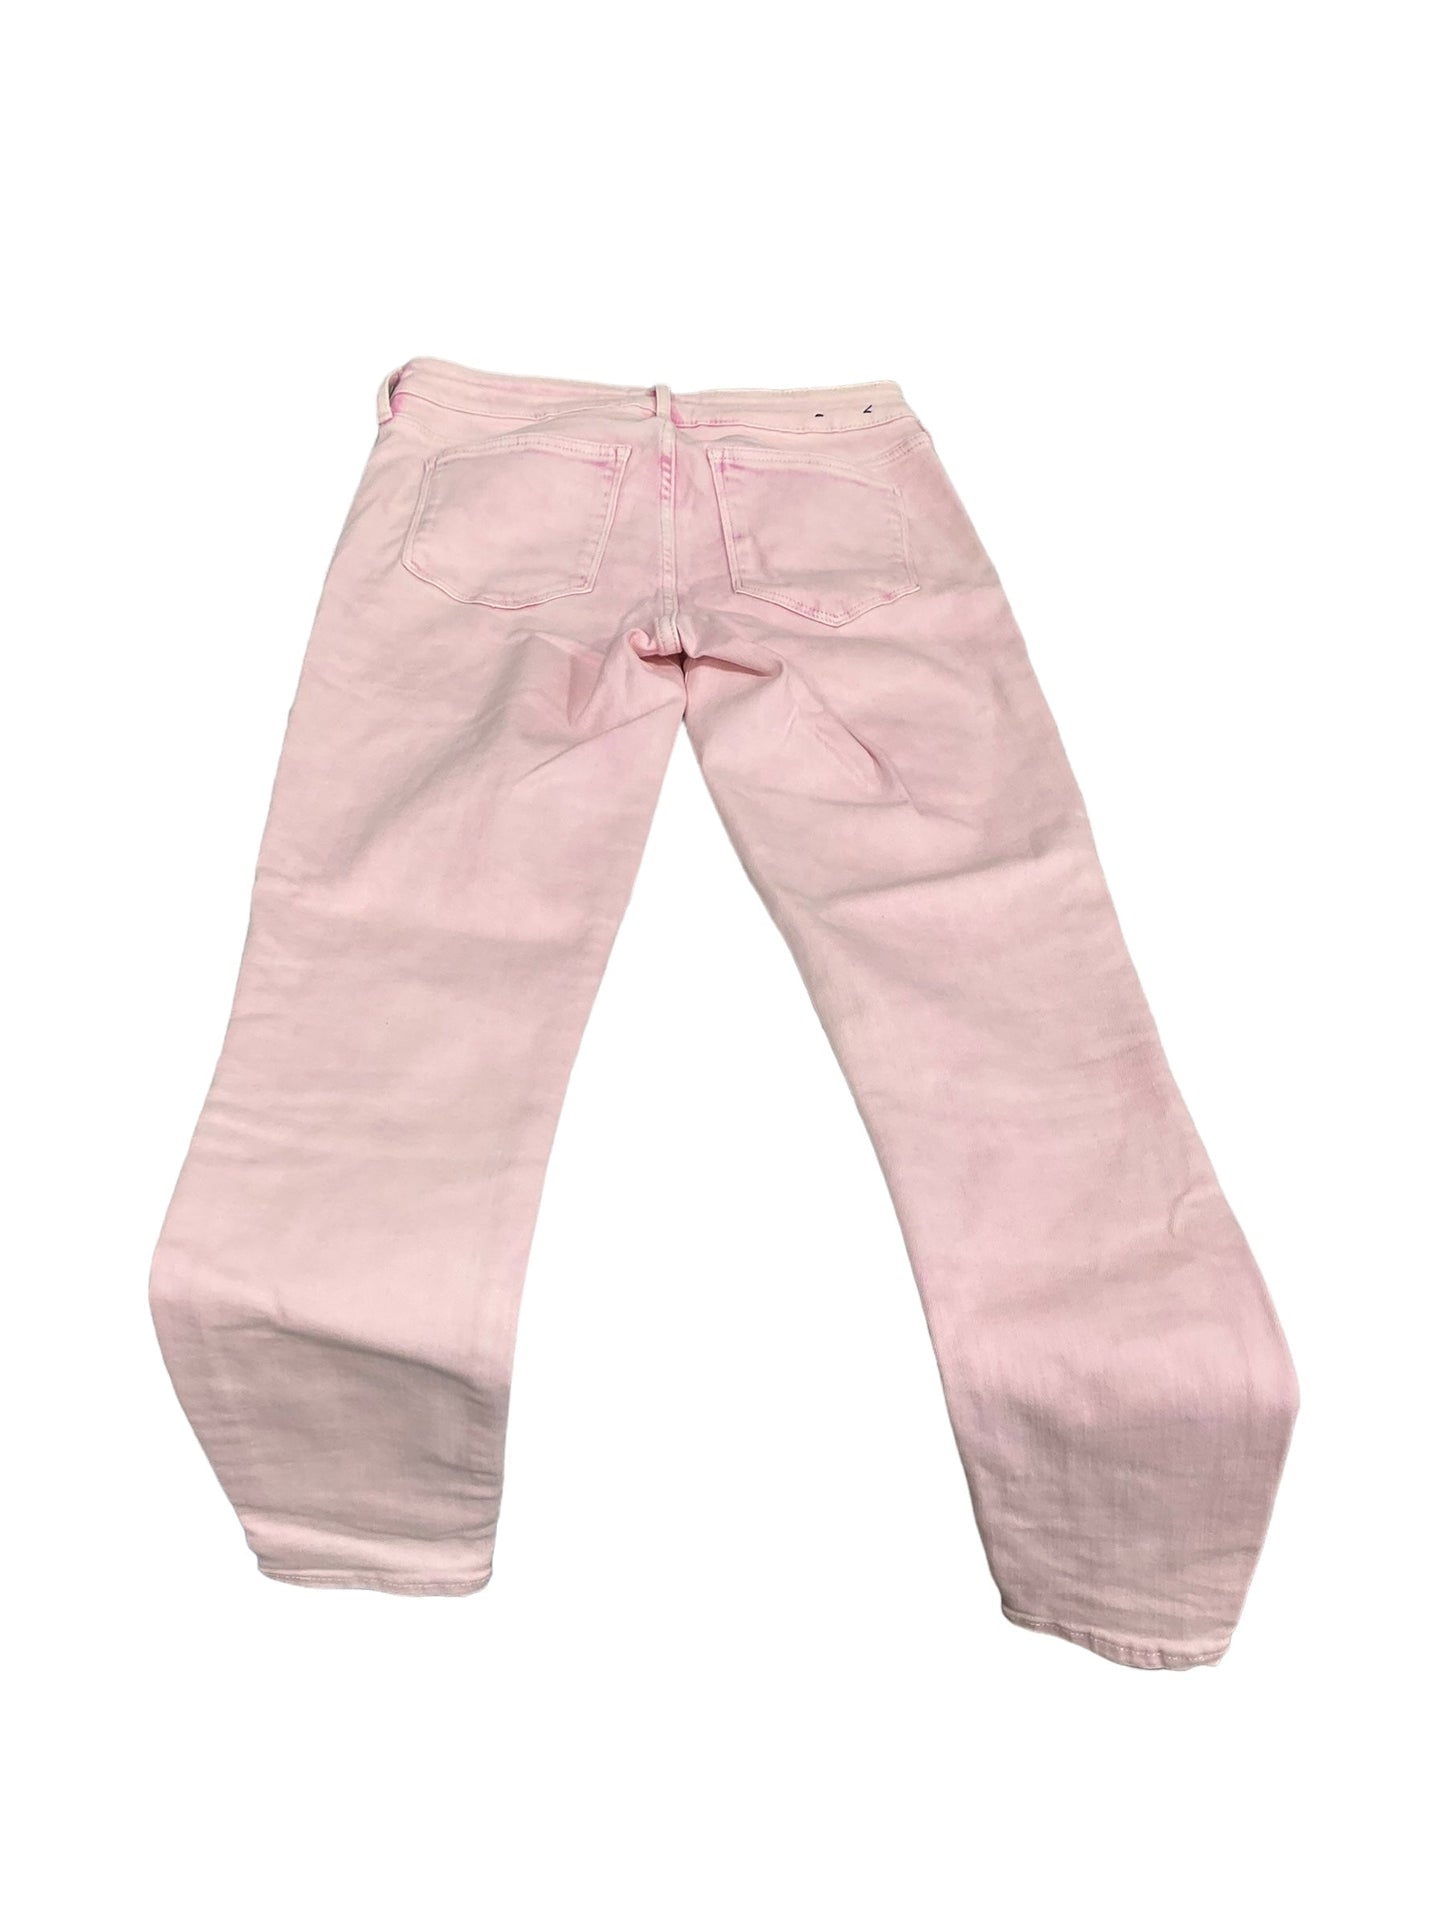 Pink Denim Jeans Jeggings Gap, Size 10